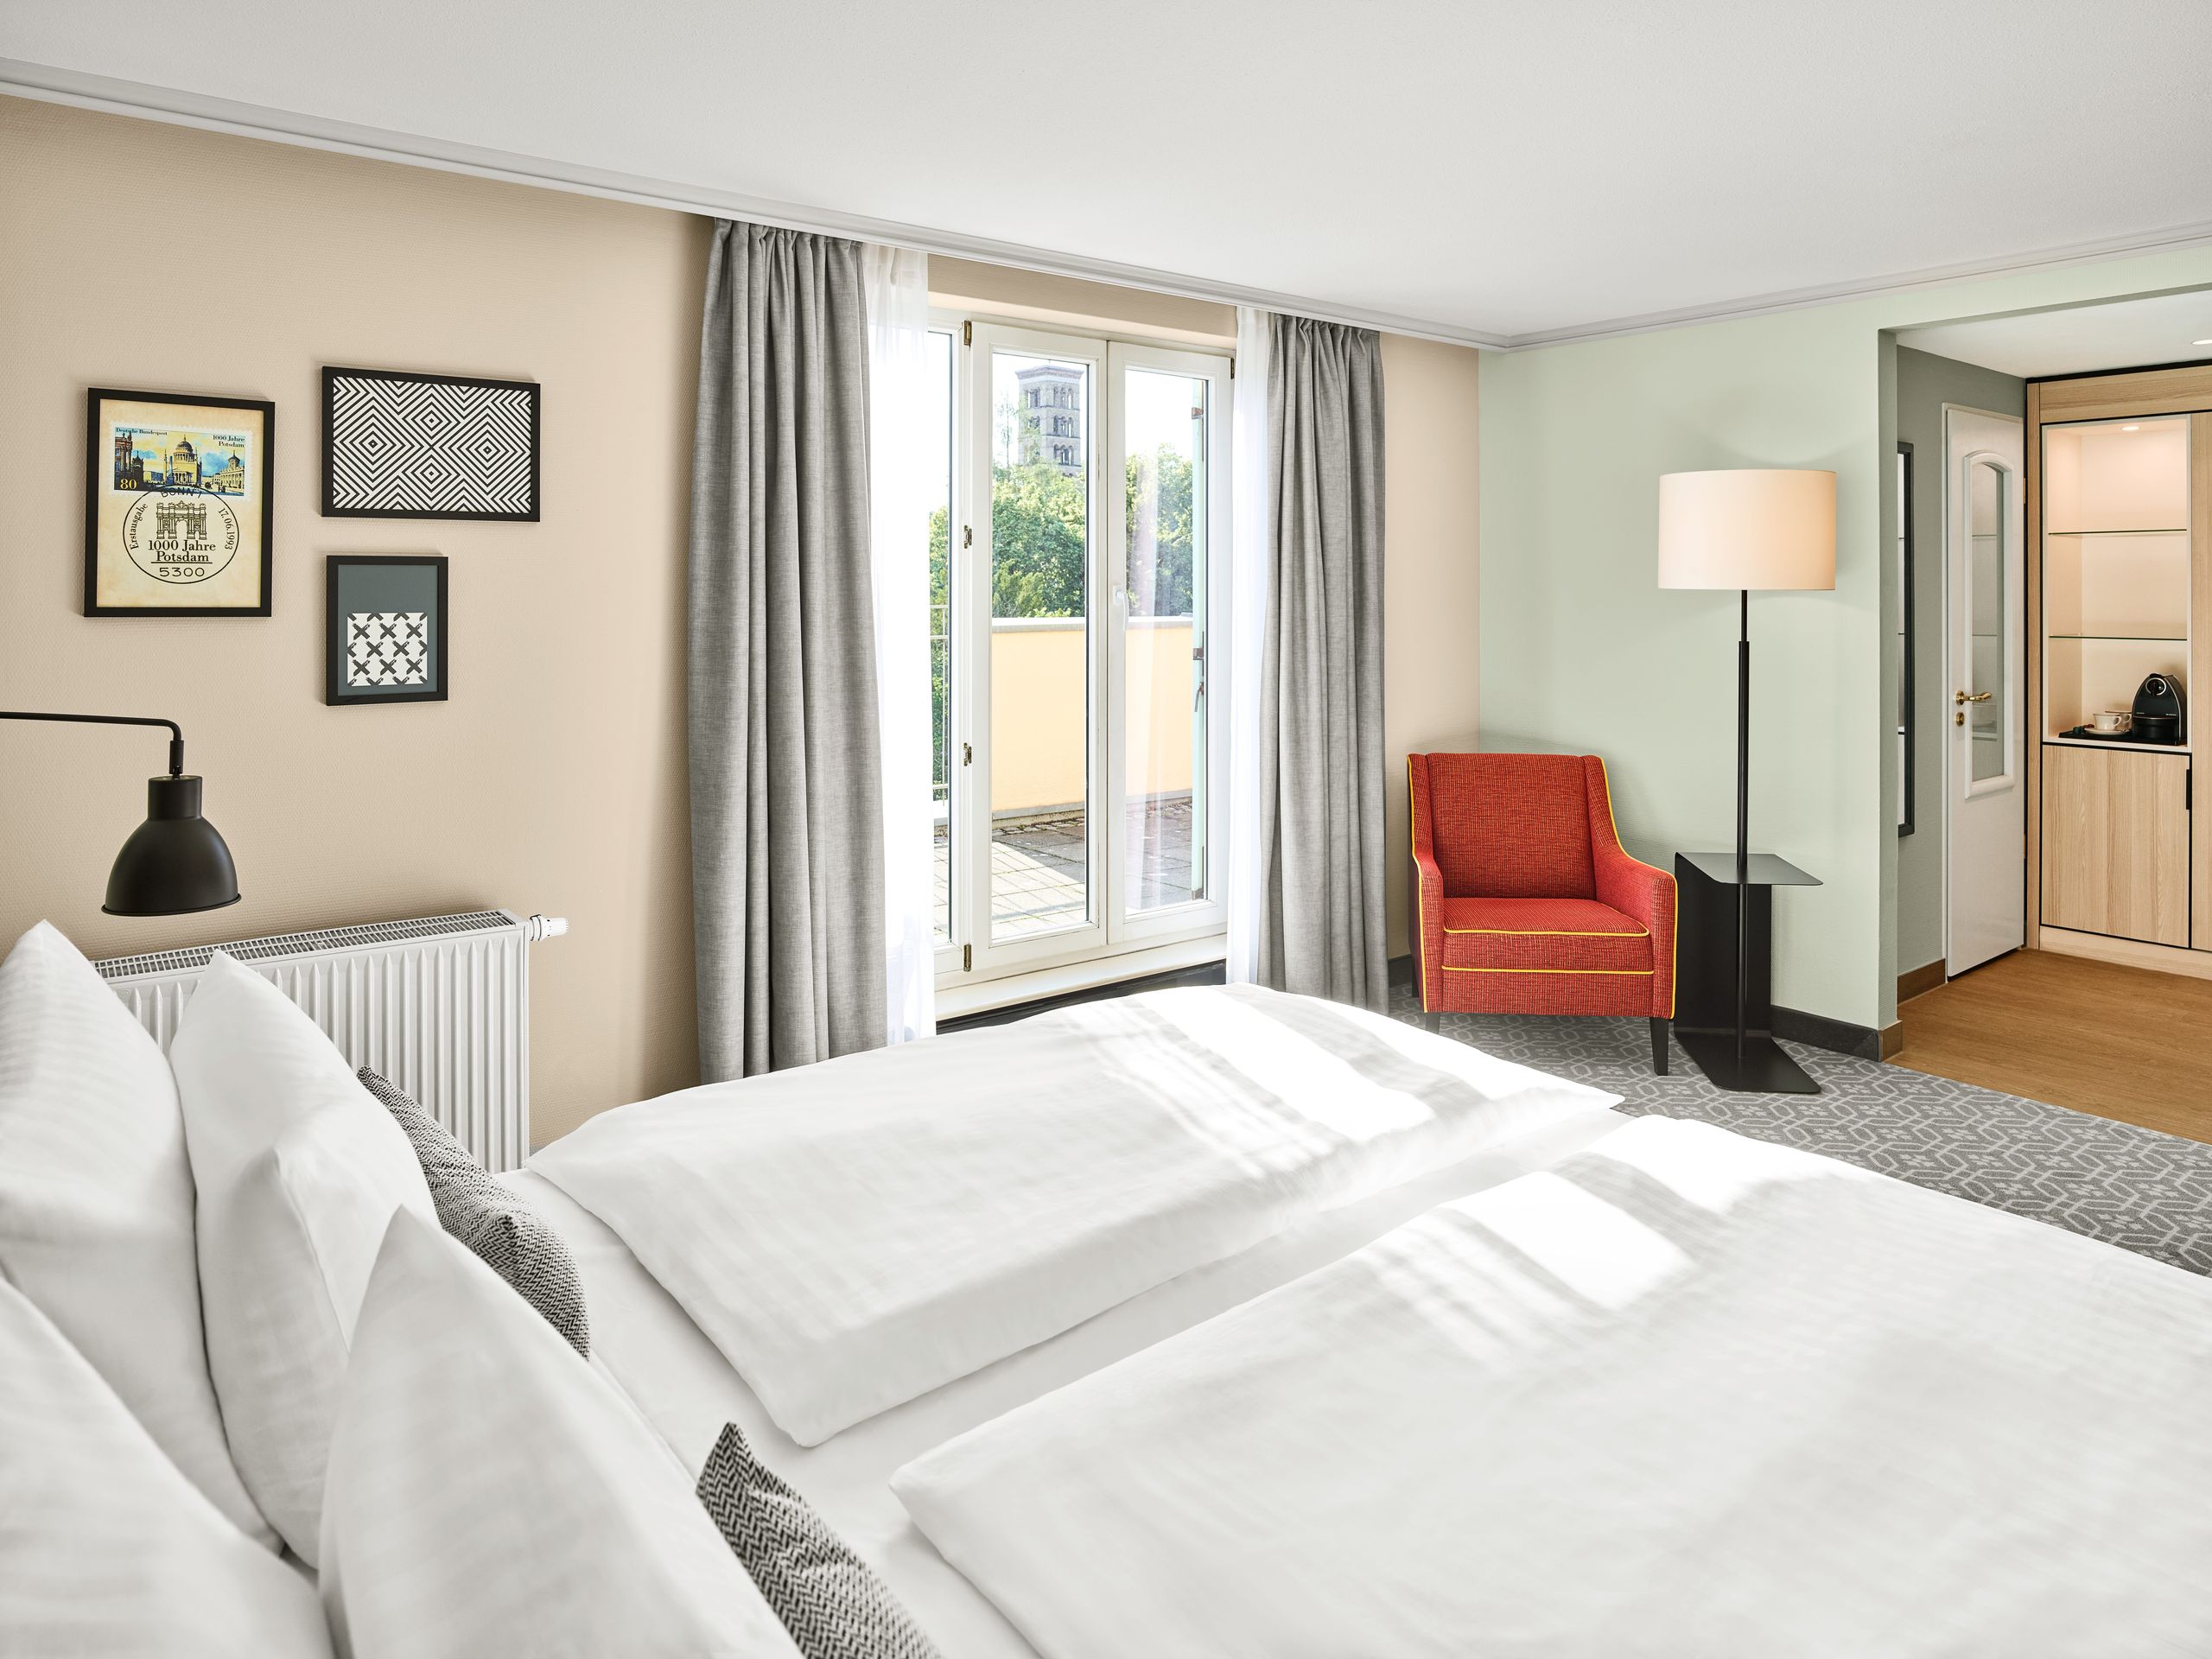 MAXX Hotel Sanssouci Potsdam, Germany - Deluxe Room